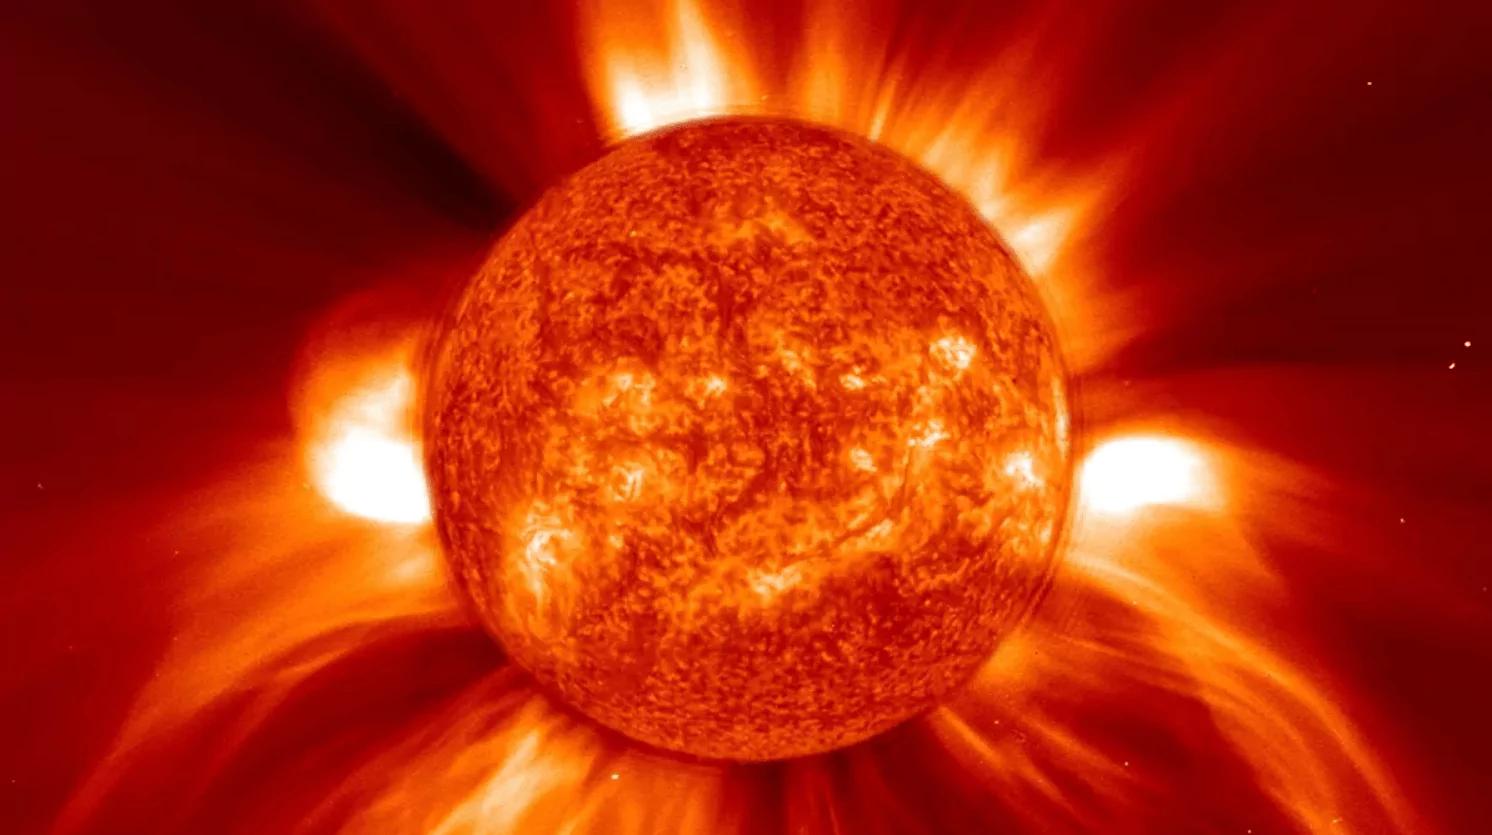 Солнечный зонд Parker наблюдал корональный выброс массы, "всасывающий" межпланетную пыль